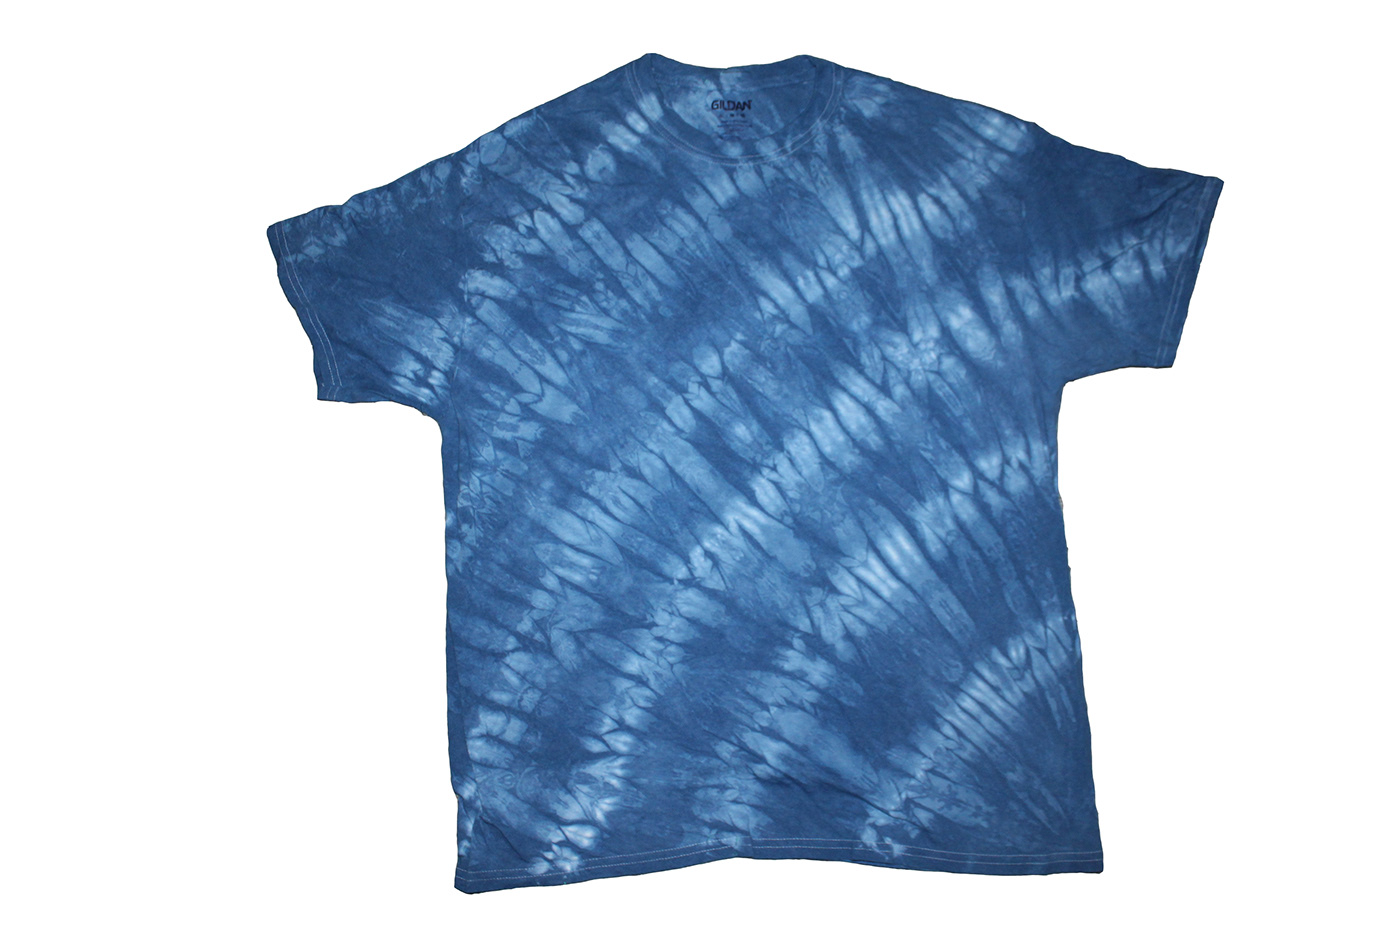 indigo shibori fabric dying shirts